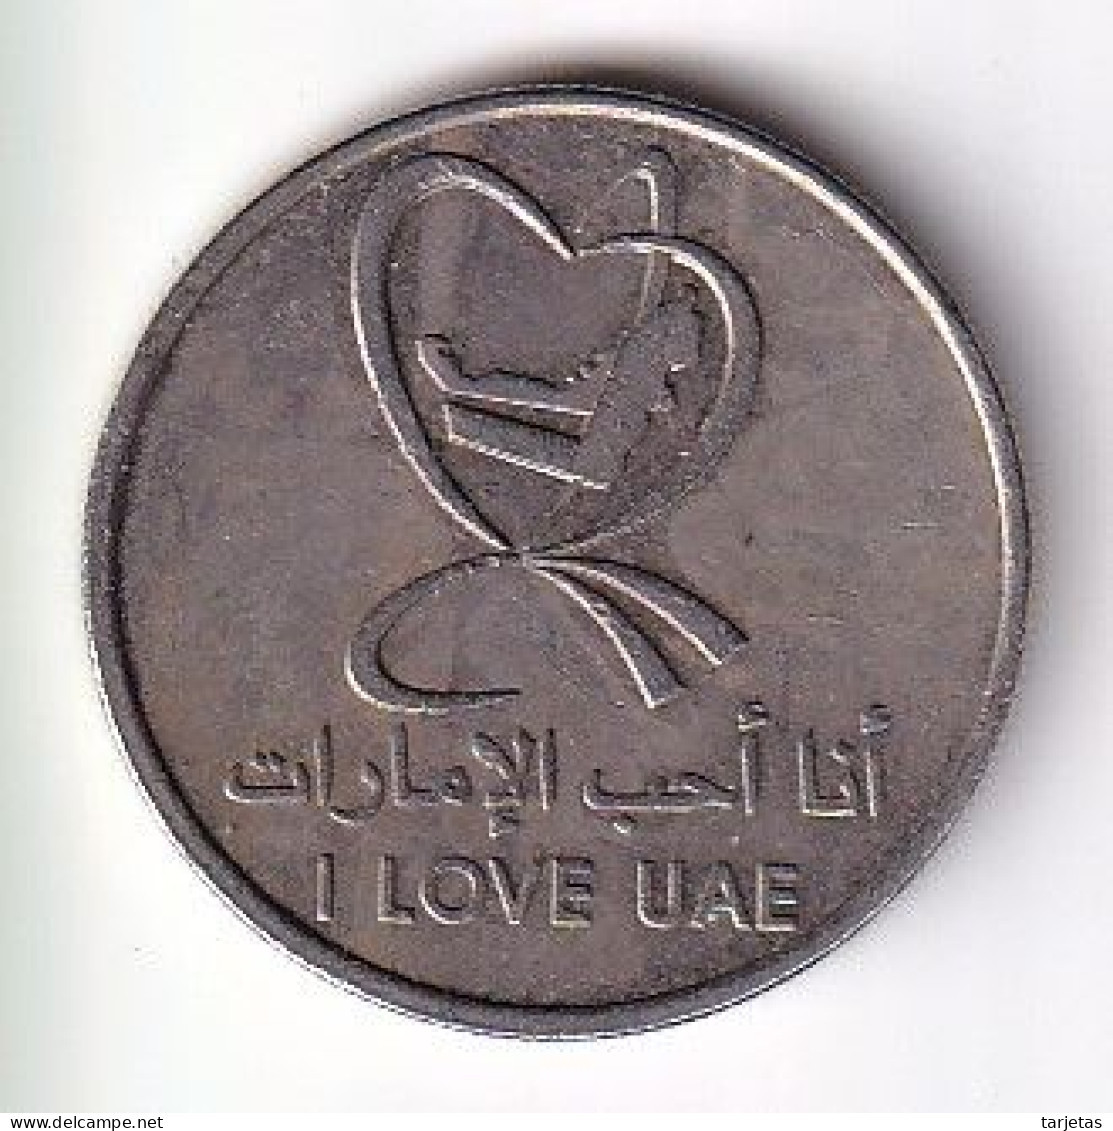 MONEDA DE EMIRATOS ARABES DE 1 DIRHAM DEL AÑO 2010 - I LOVE UAE (COIN) - Ver. Arab. Emirate